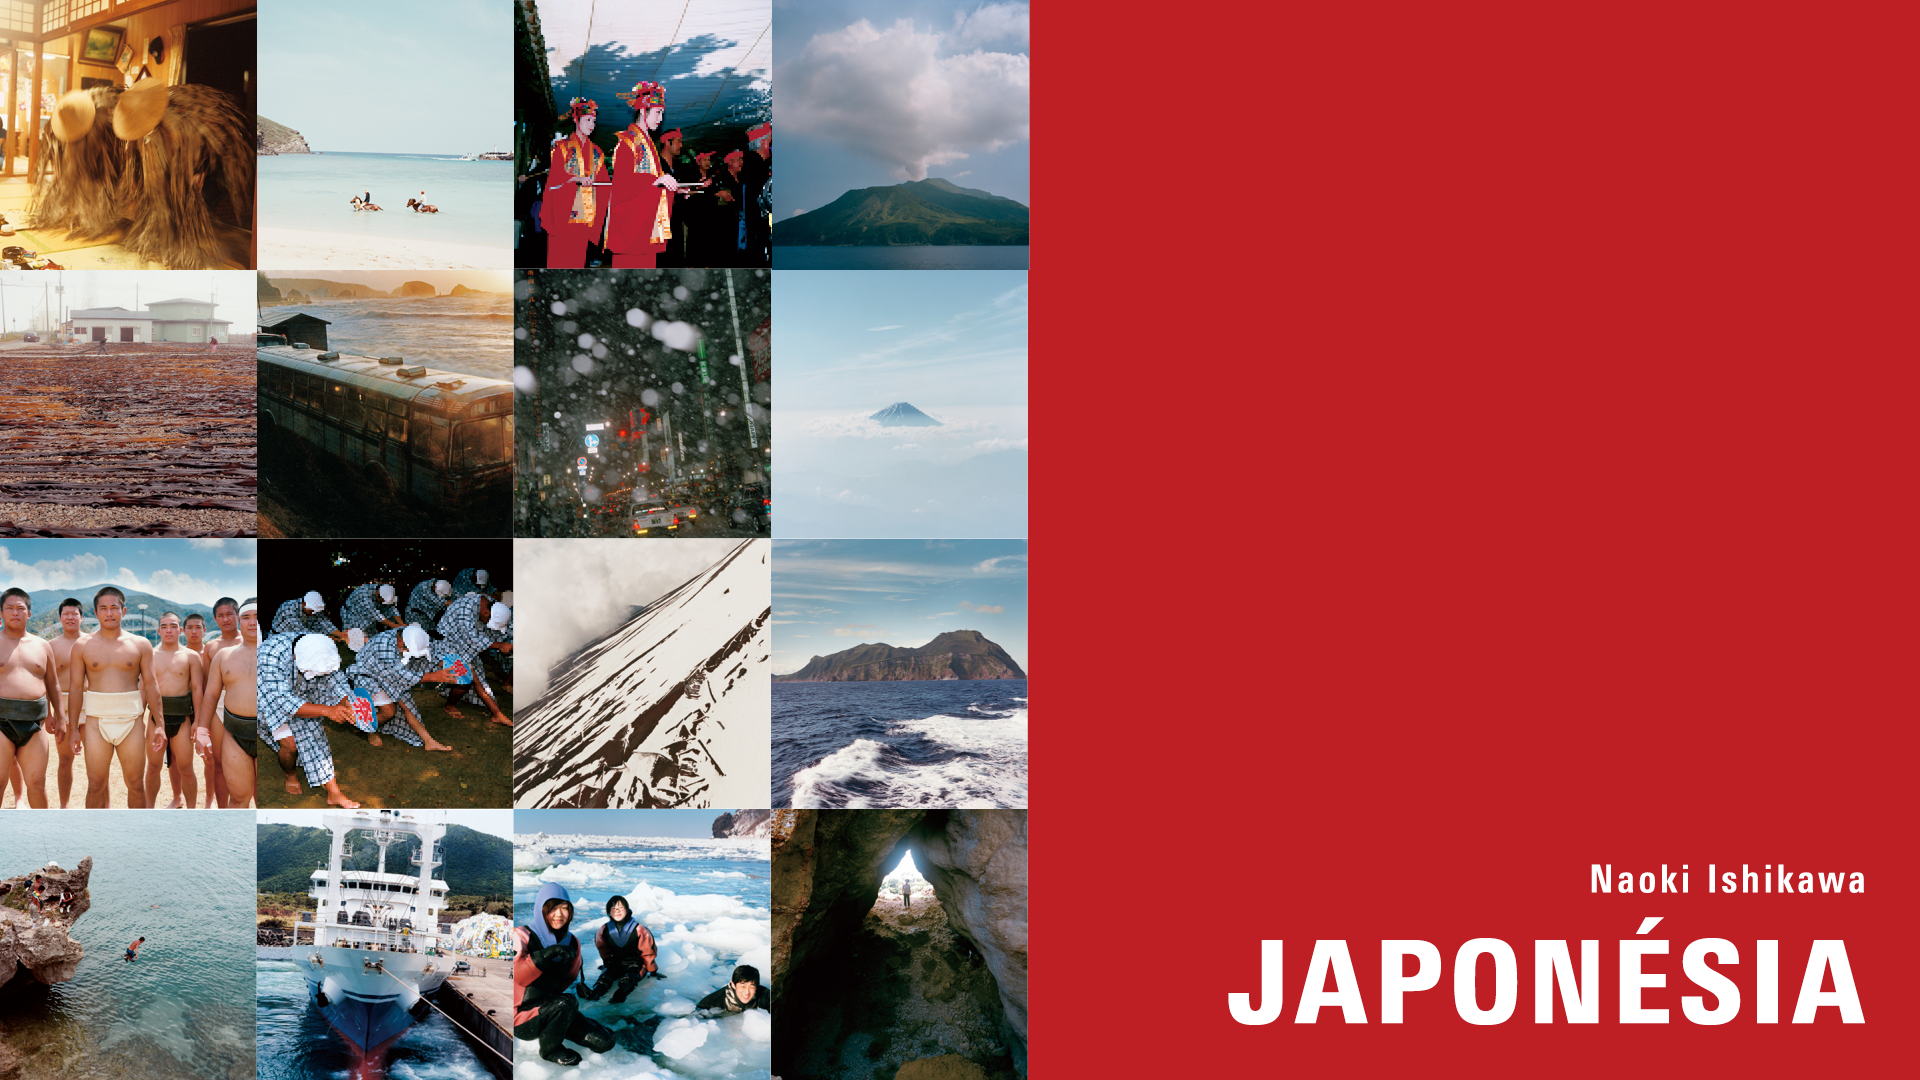 Japonésia, de Naoki Ishikawa